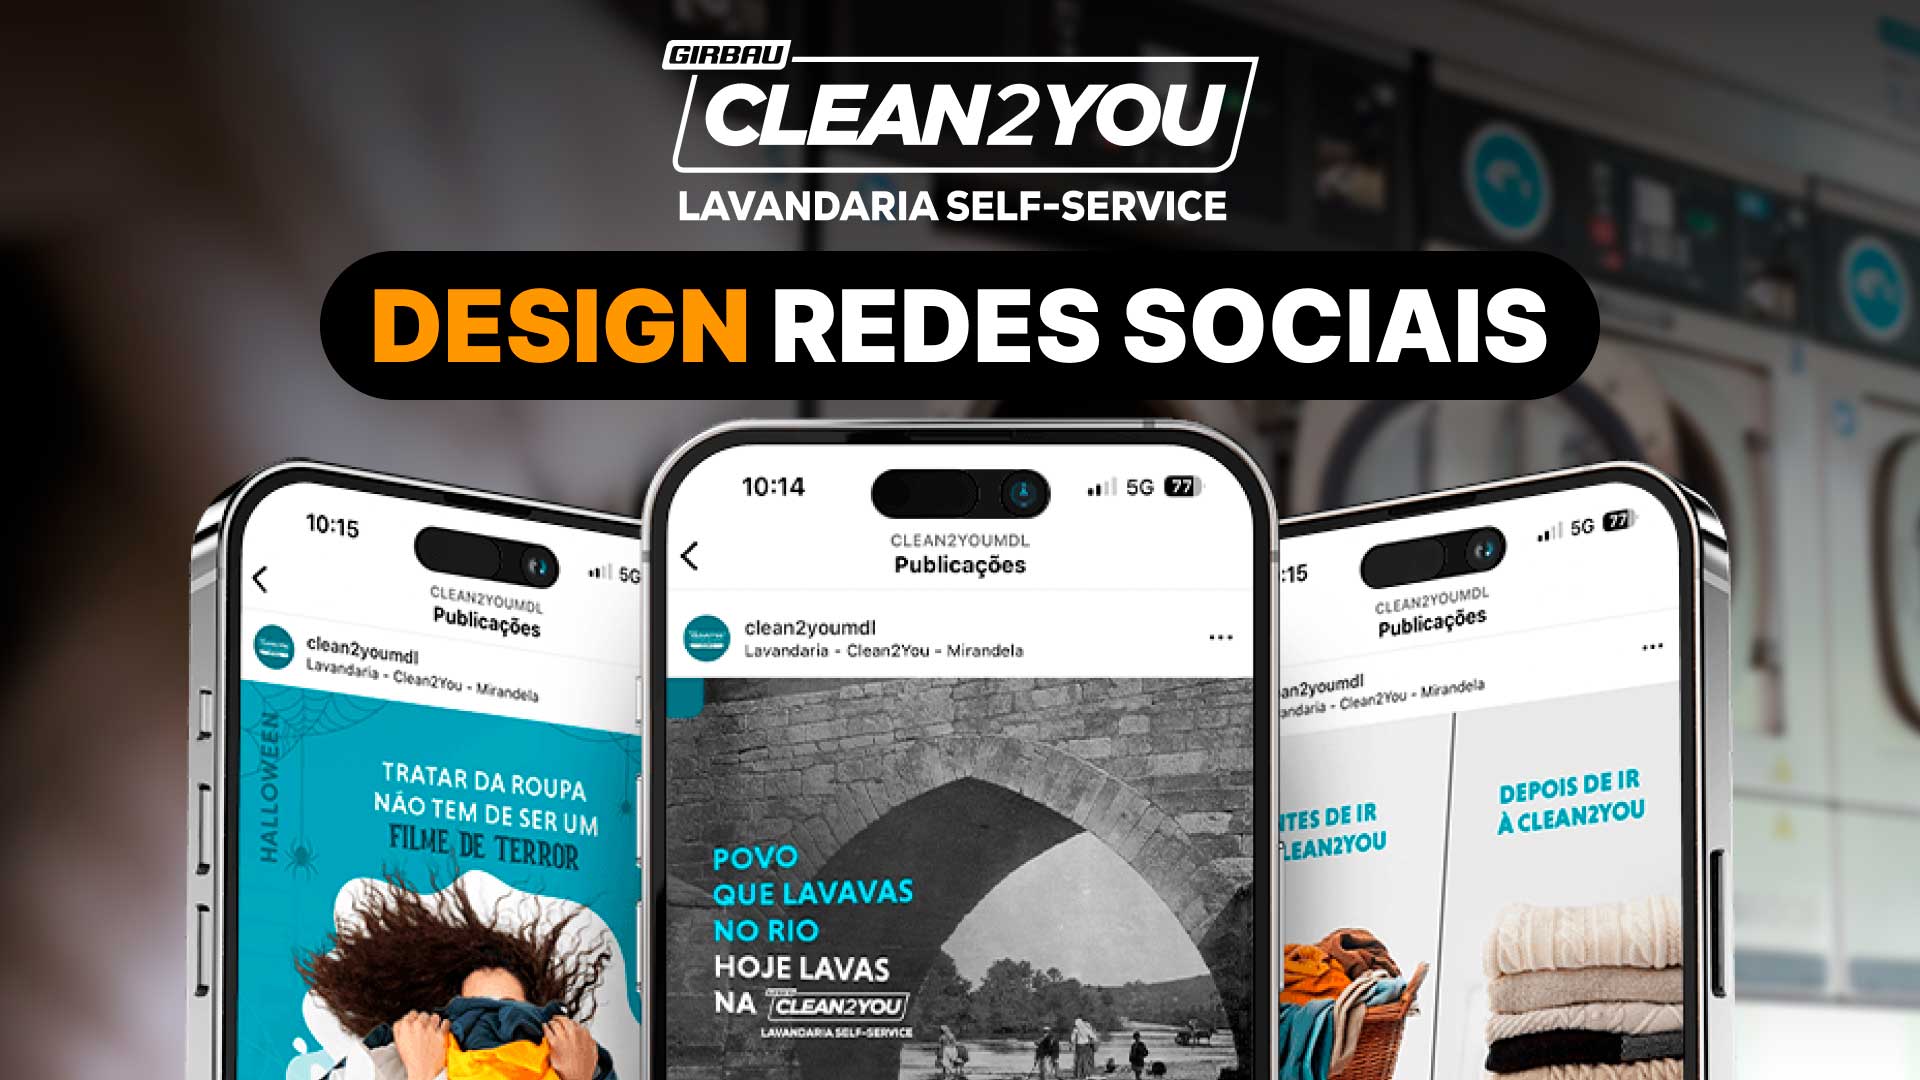 clean2you lavandaria self-service em mirandela design by mediaon-agência de comunicação e marketing